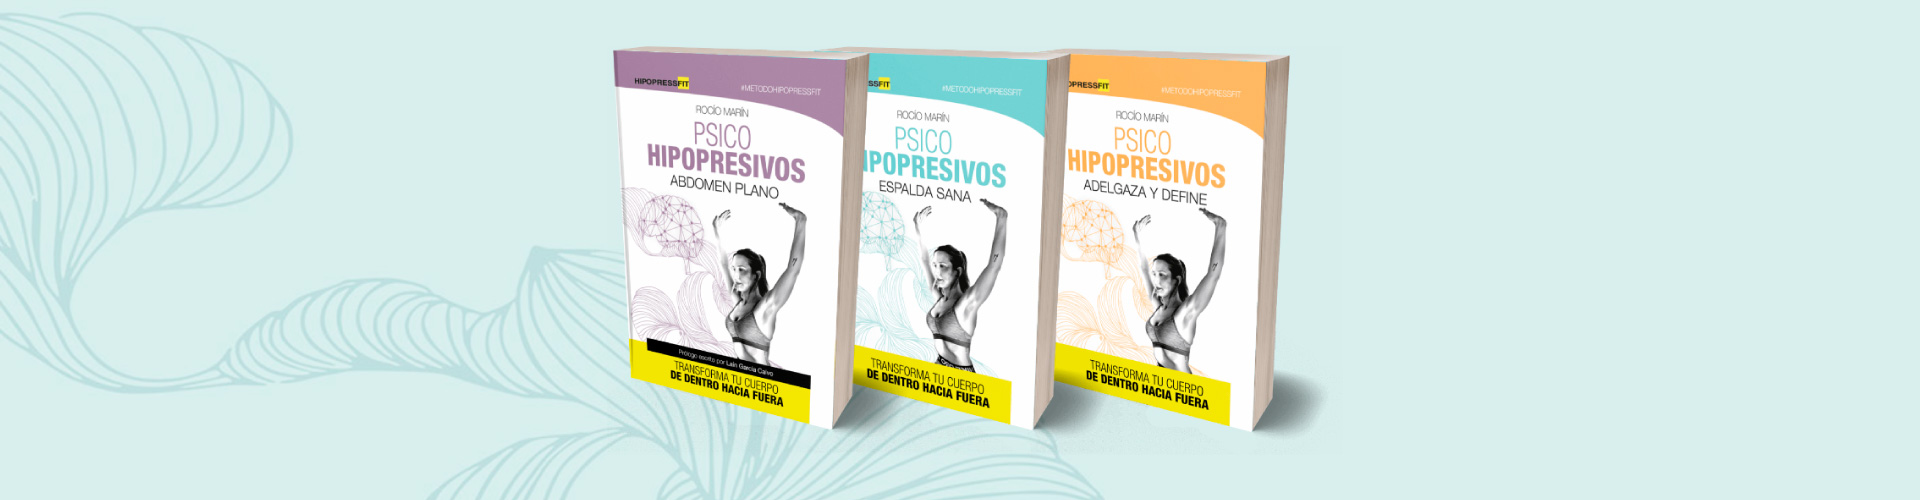 Libros abdominales hipopresivos HipopressFit